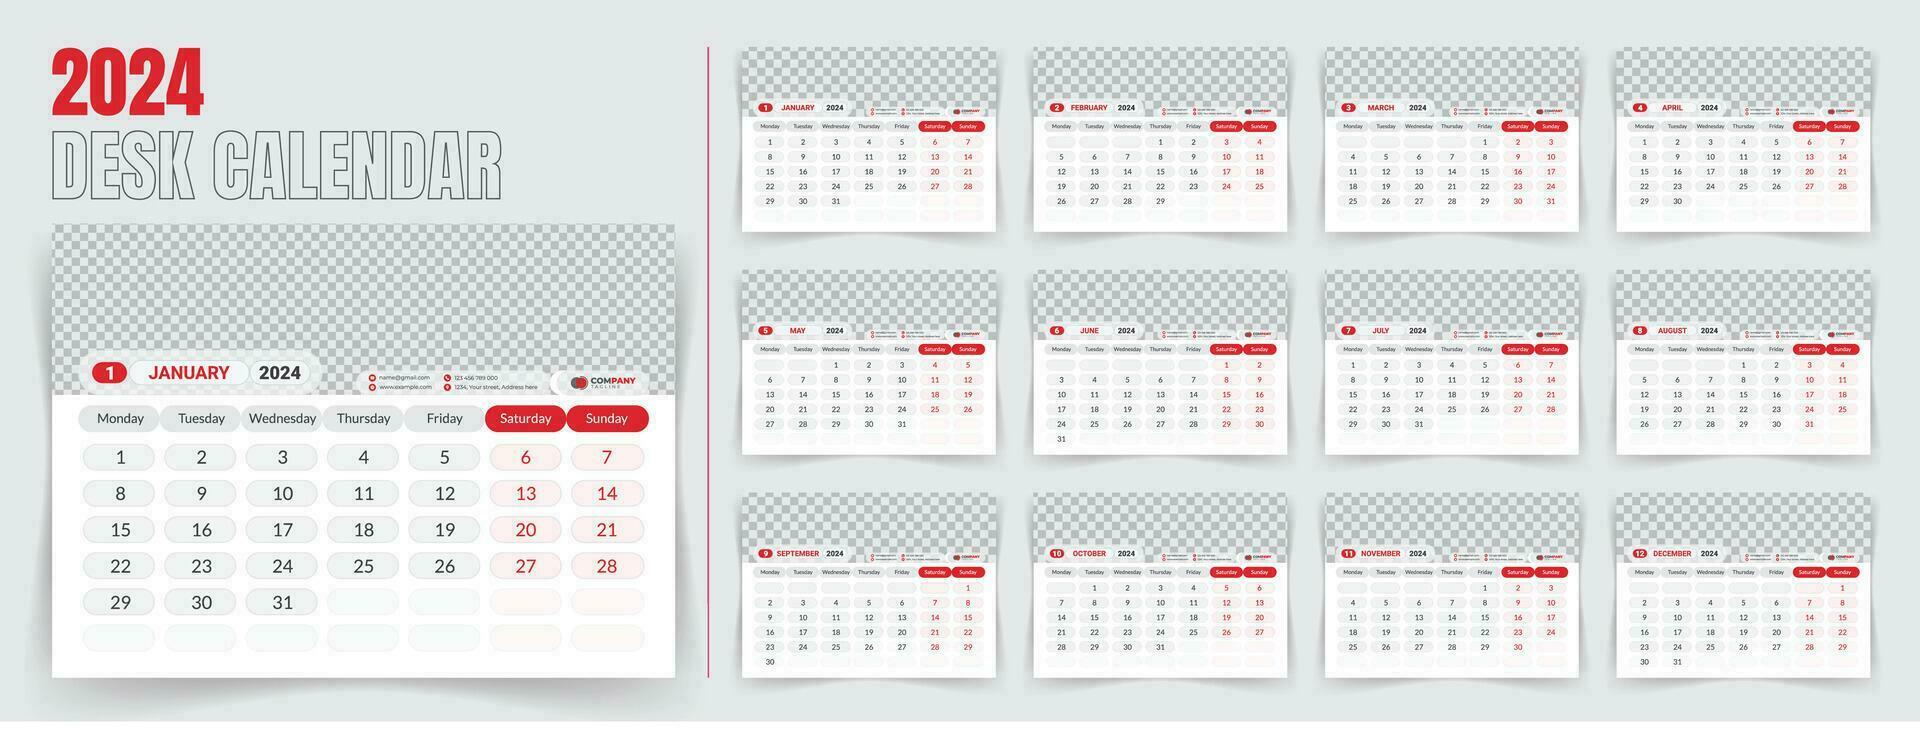 skrivbord kalender 2024 mall design, en gång i månaden kalender, tabell kalender, kontor kalender 2024. med redigerbar element. vektor